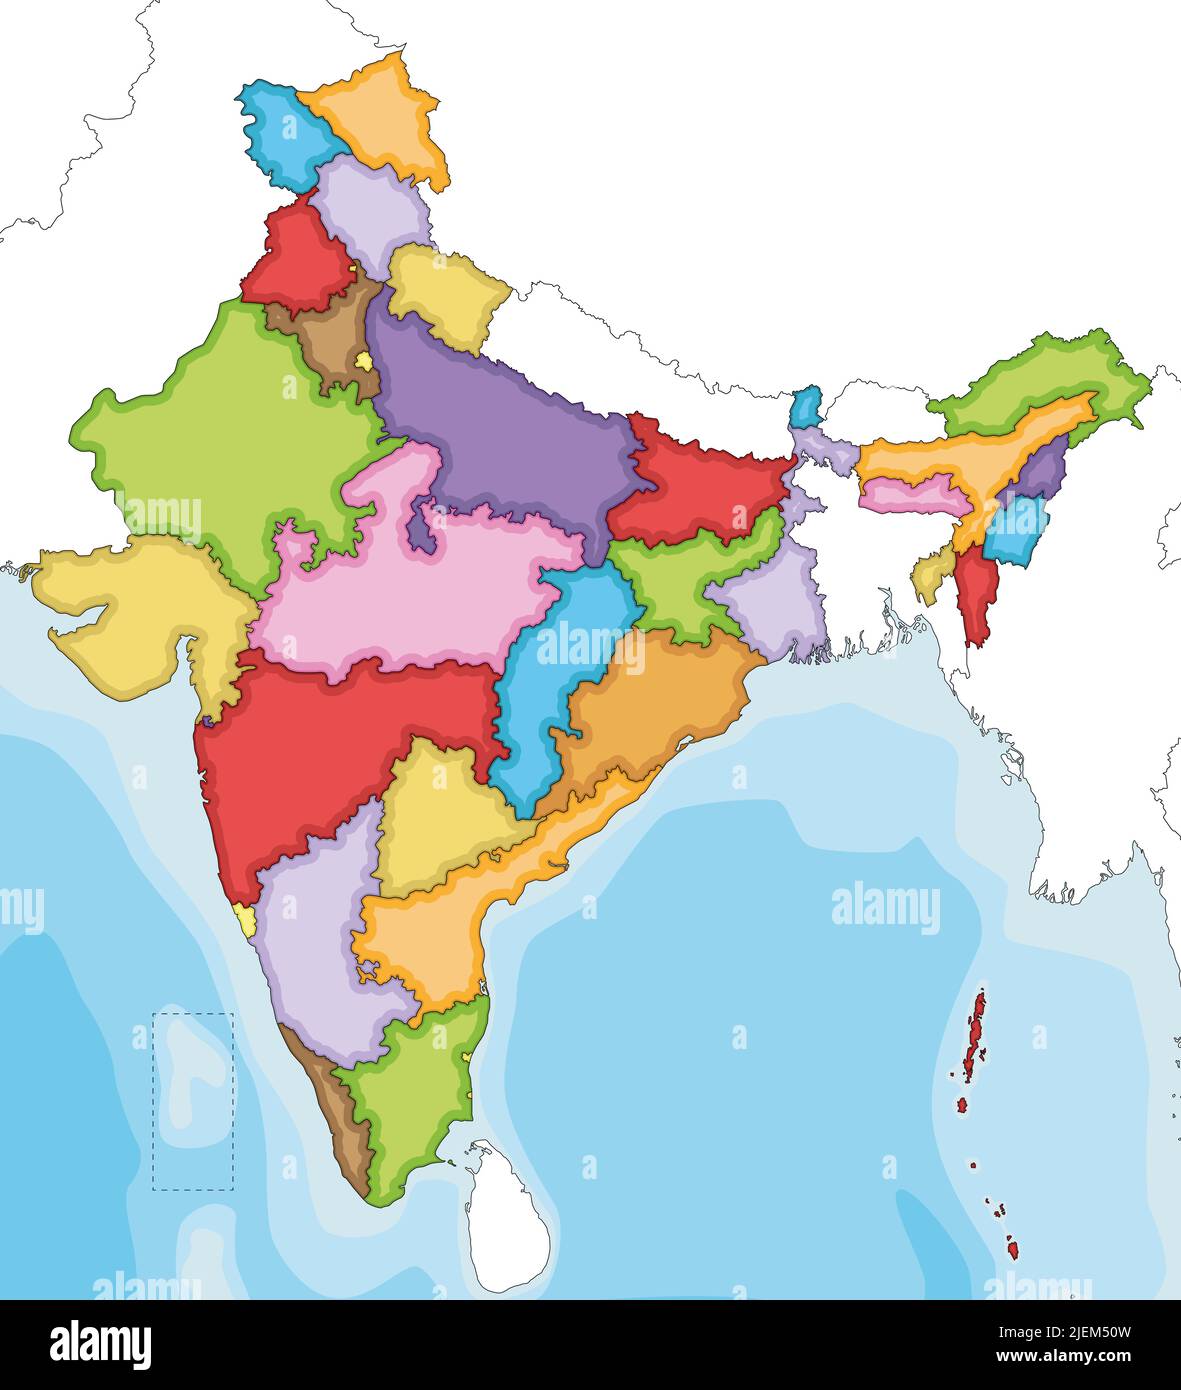 Vector ilustra un mapa en blanco de la India con estados, territorios y divisiones administrativas, y países vecinos. Se puede editar y etiquetar claramente Ilustración del Vector